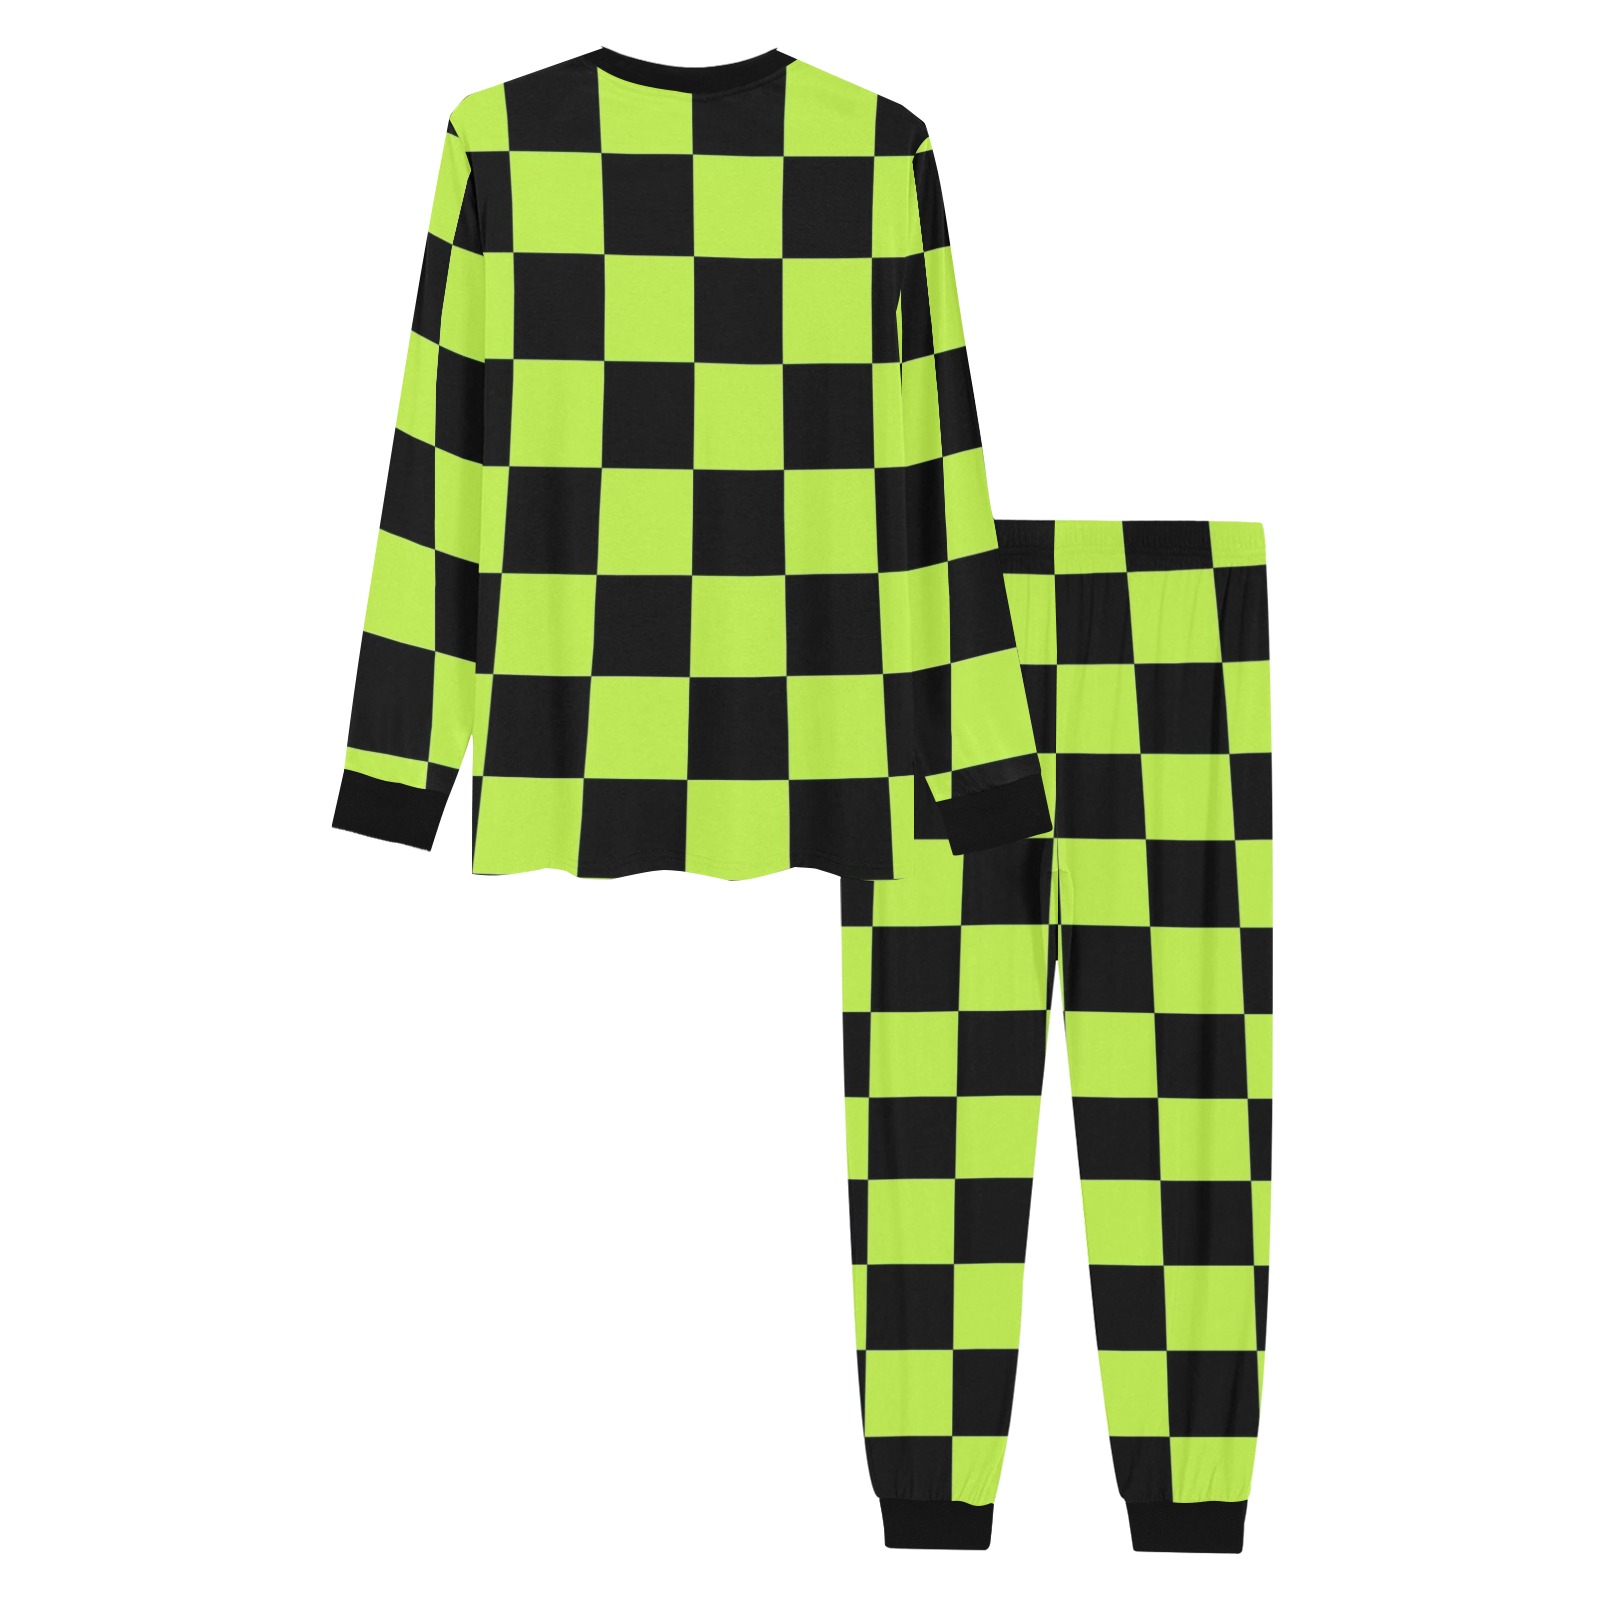 Lime Green and Black Checks Men's All Over Print Pajama Set